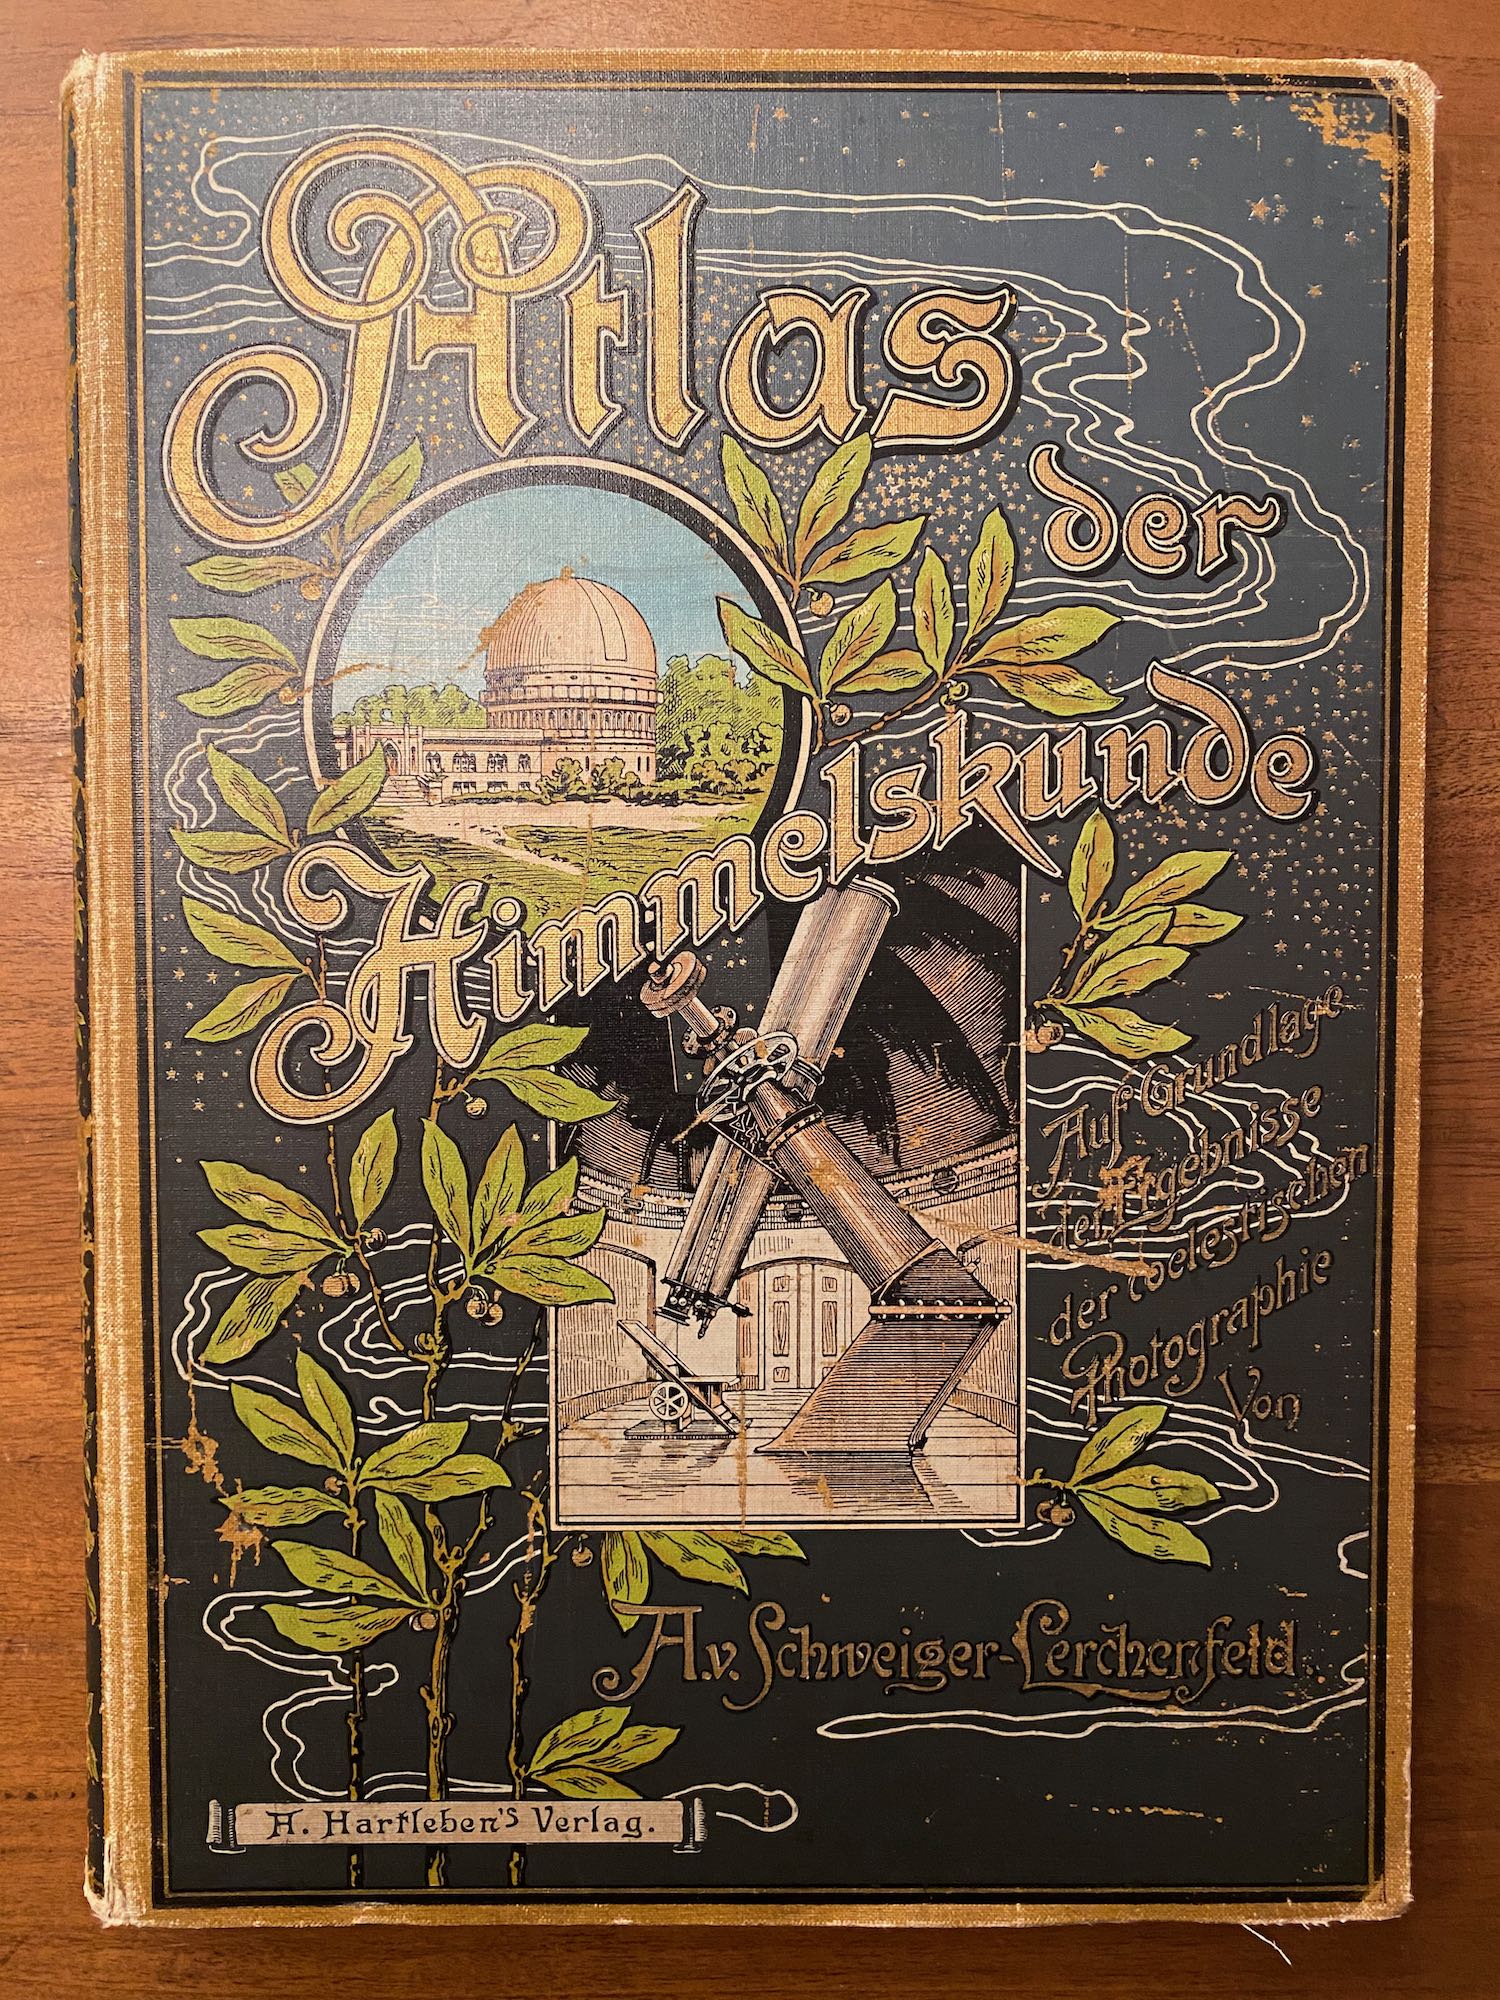 Je bekijkt nu Atlas der Himmelskunde – 1898